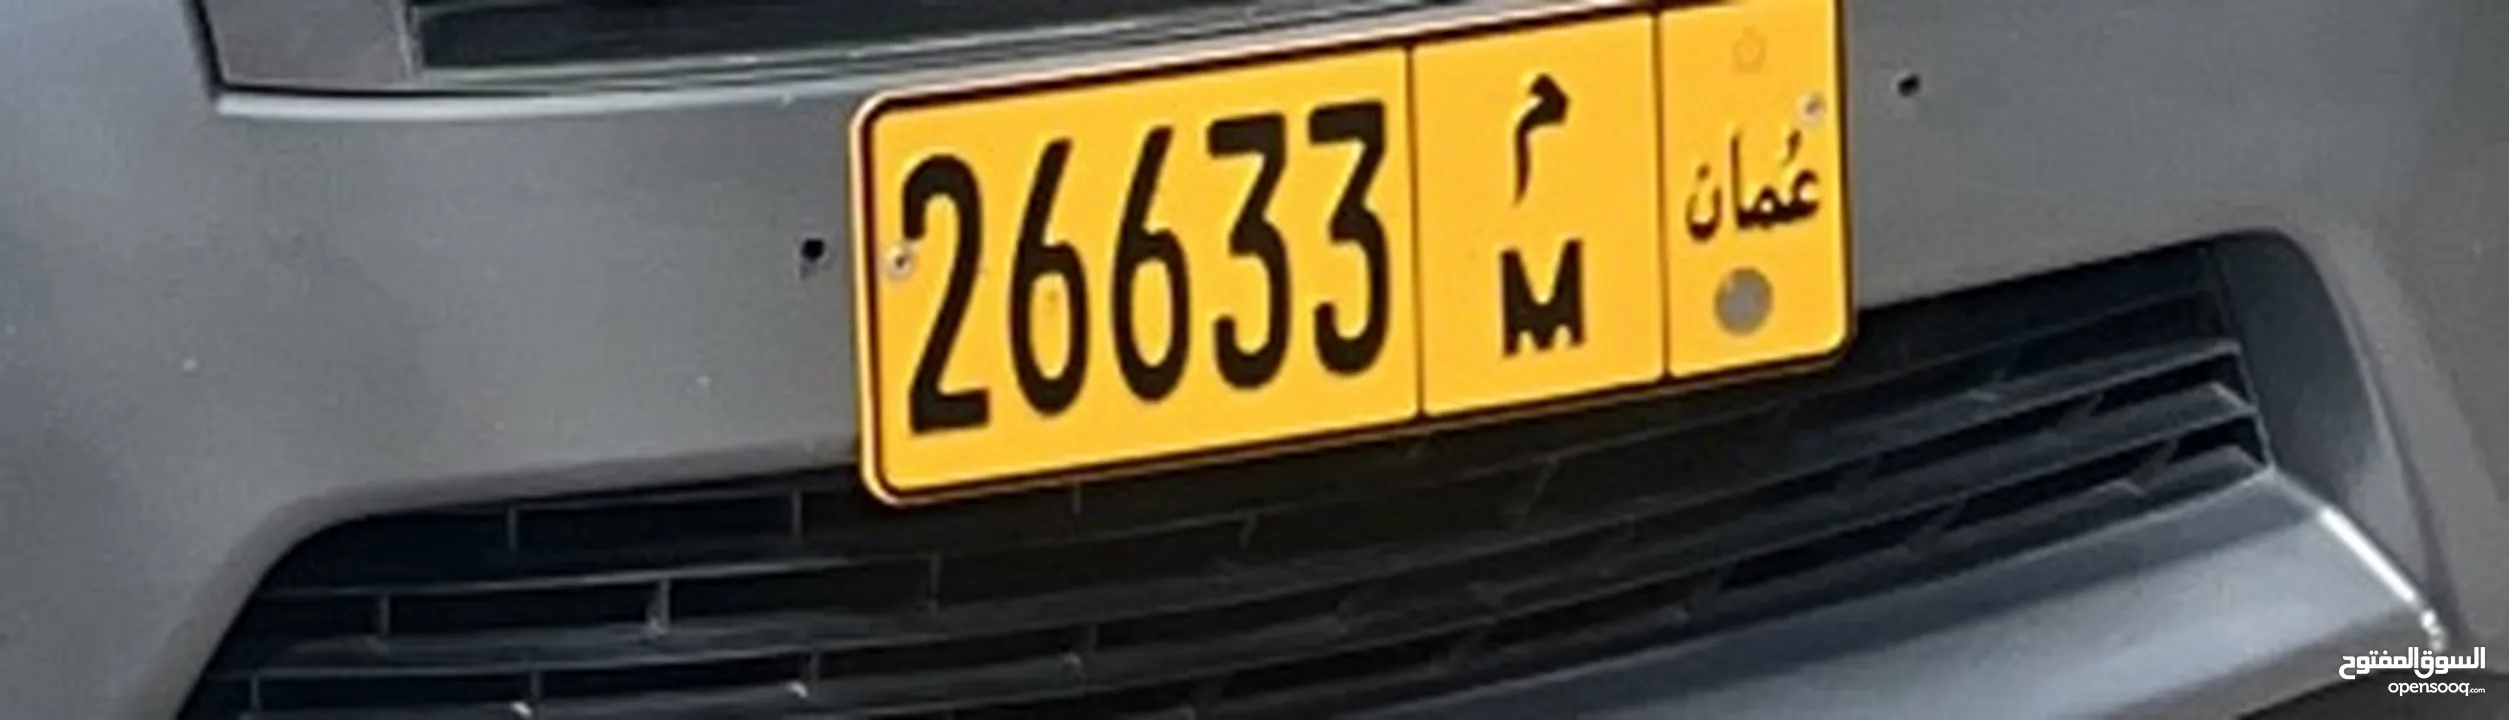 رقم خماسيّ رمز واحد البيع  M 26633